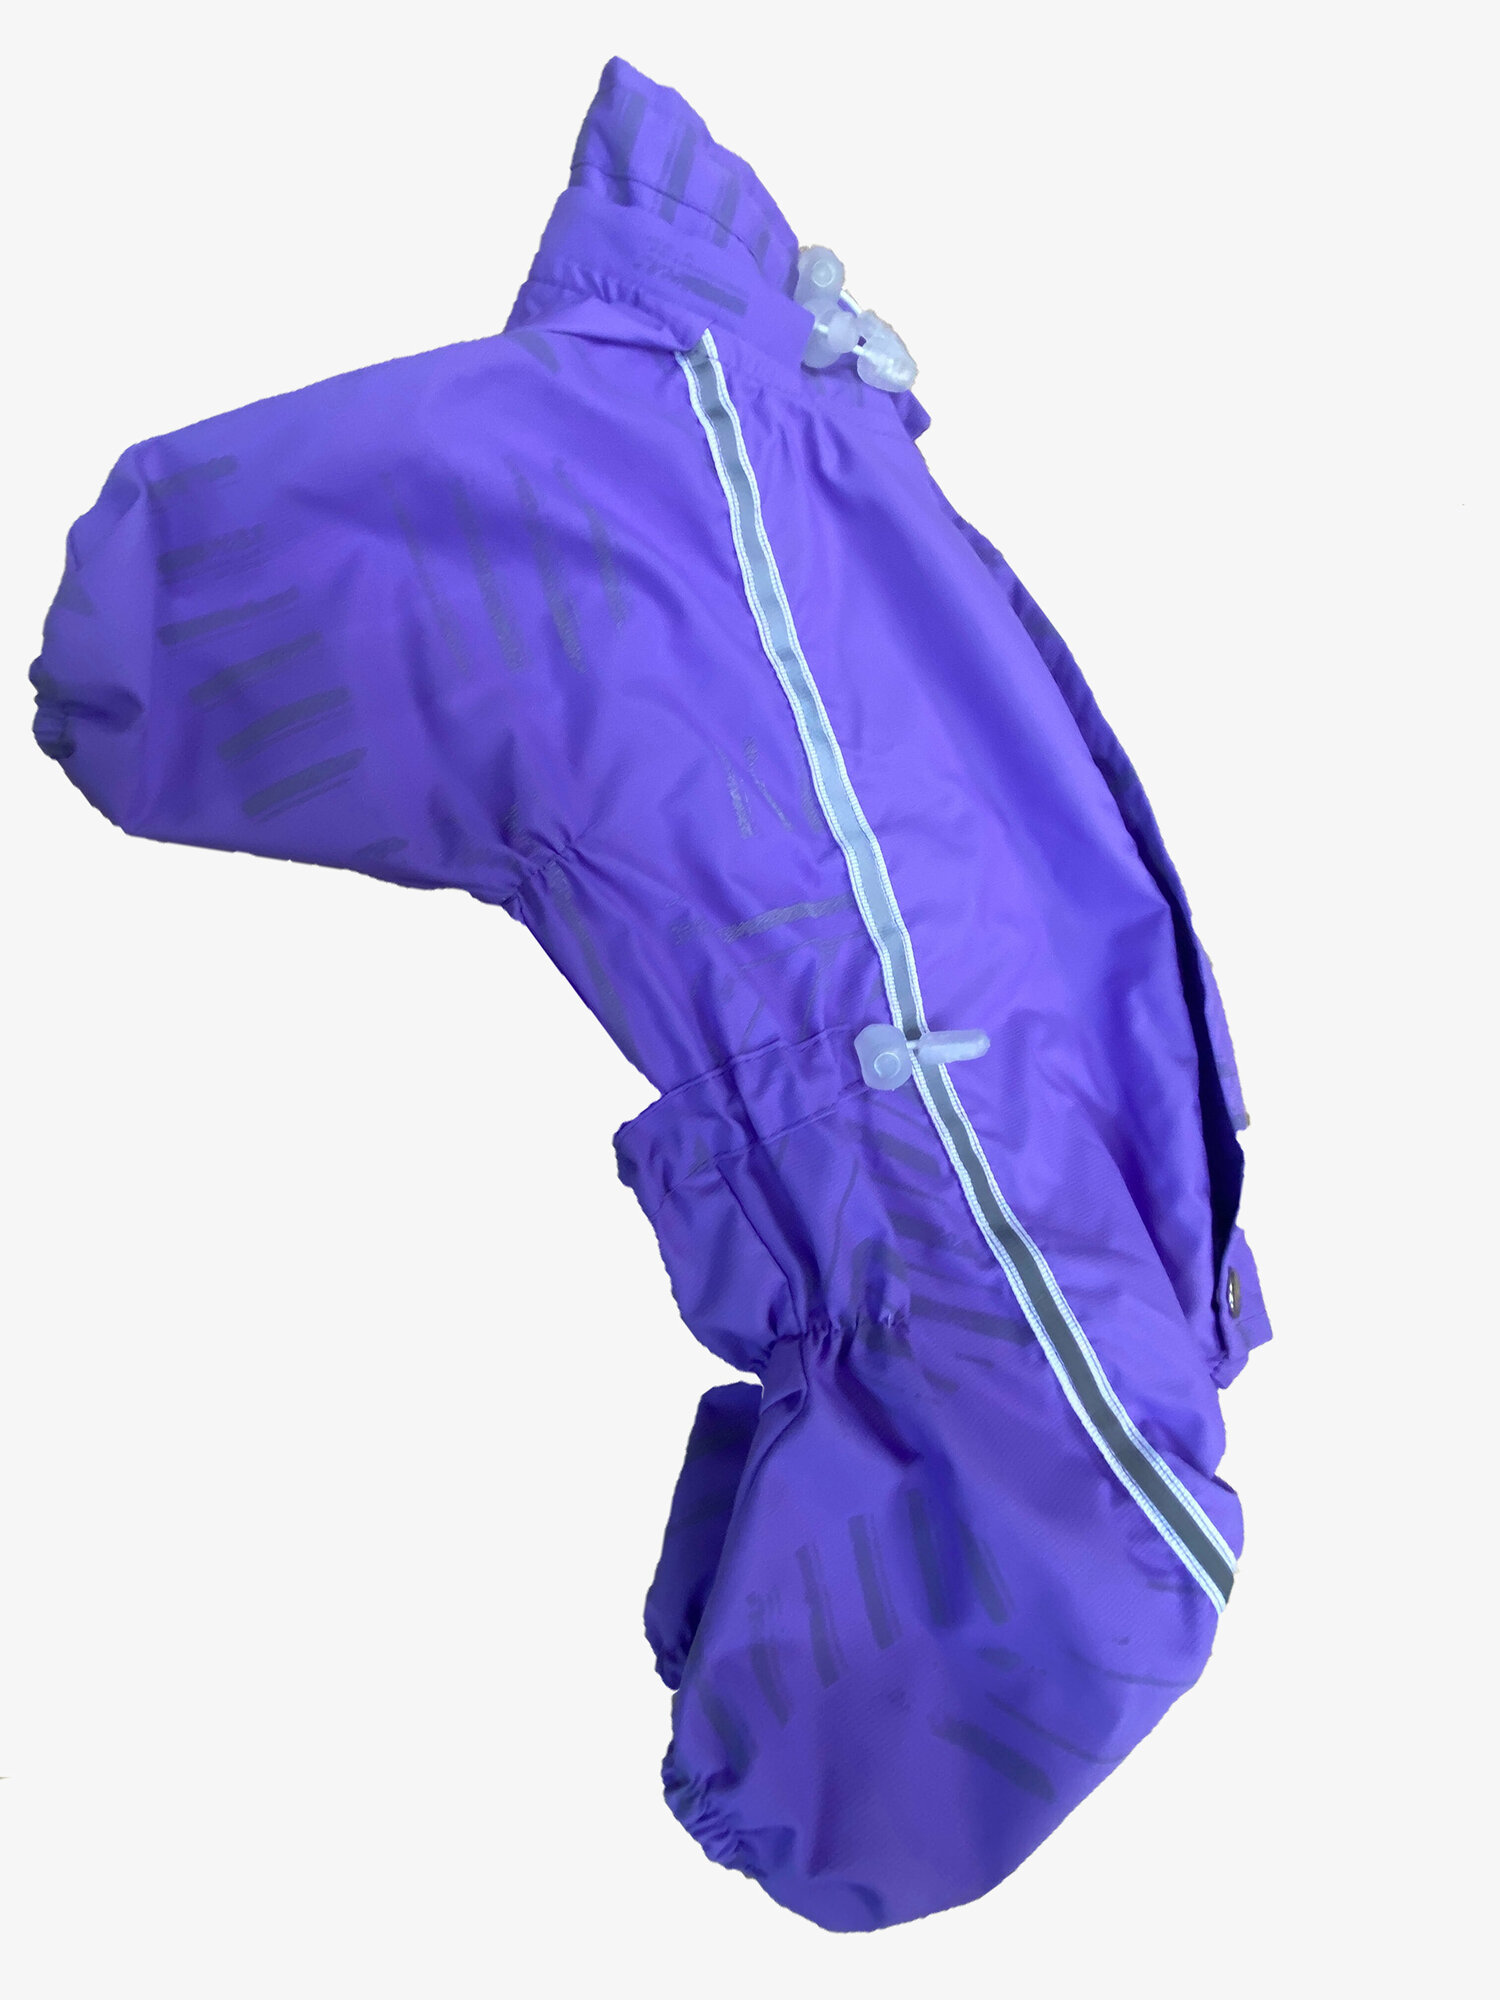 Stillo di Bari дождевик фиолетовый мембрана для собак №10 28cm